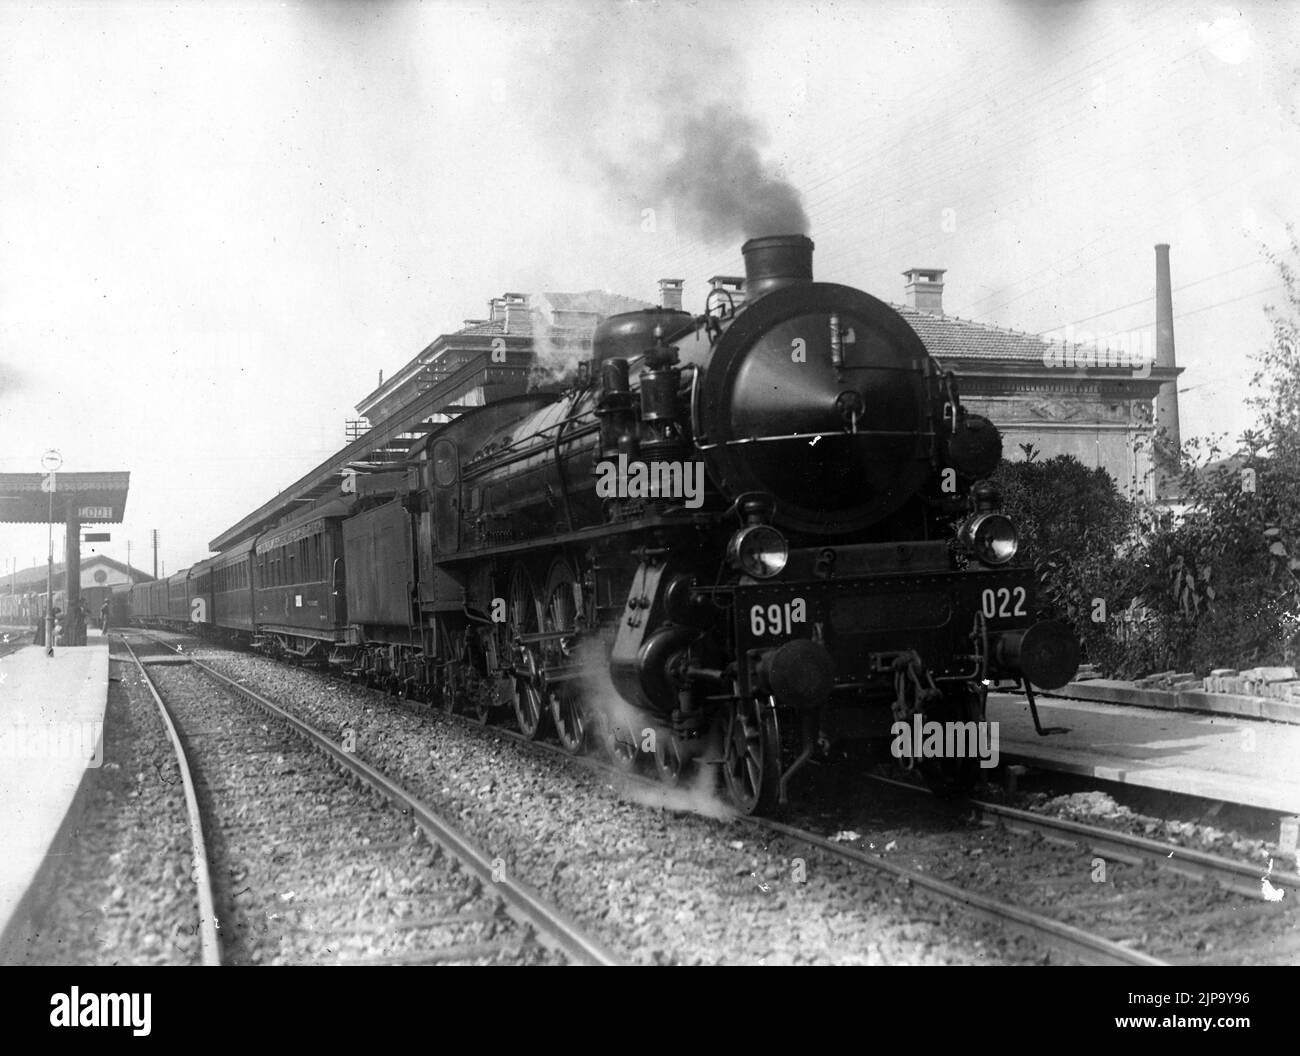 Treni e Tram - Locomotiva Breda Gr. 691-022 in transito a Lodi negli anni'30 conservato presso il Museo Nazionale della scienza e della tecnica di Milano Stock Photo